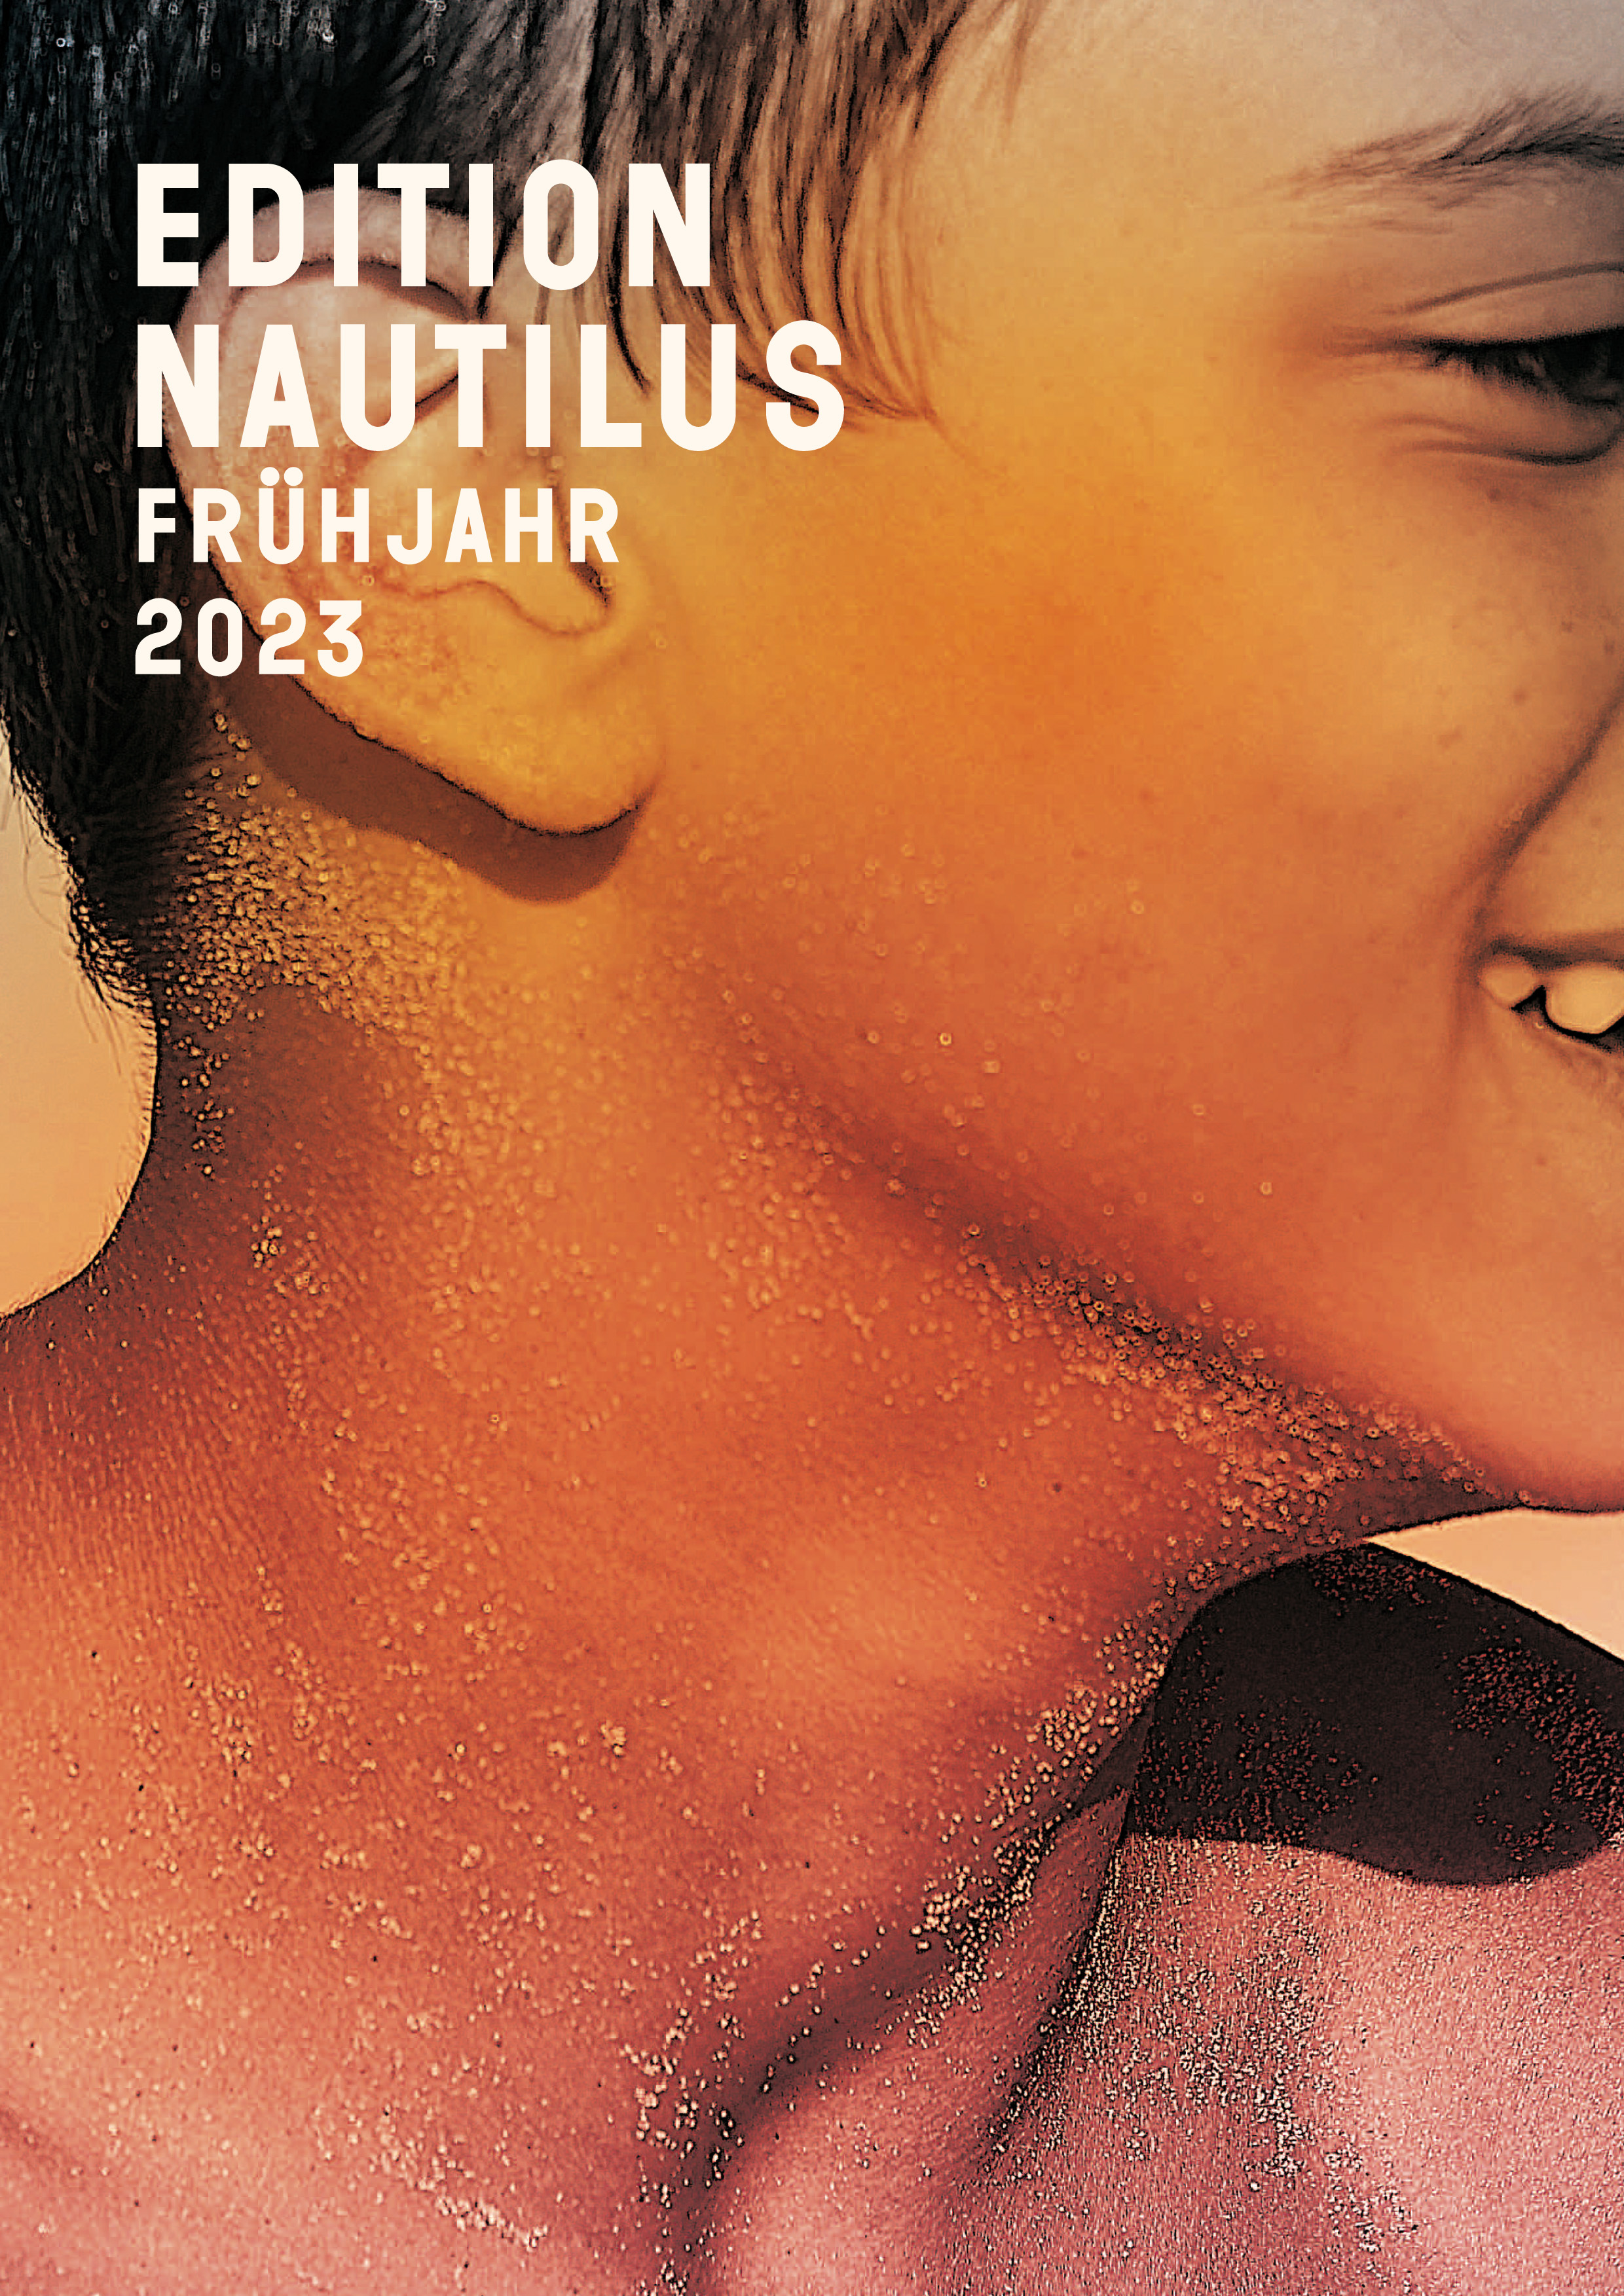 Vorschau Edition Nautilus Frühjahr 2023